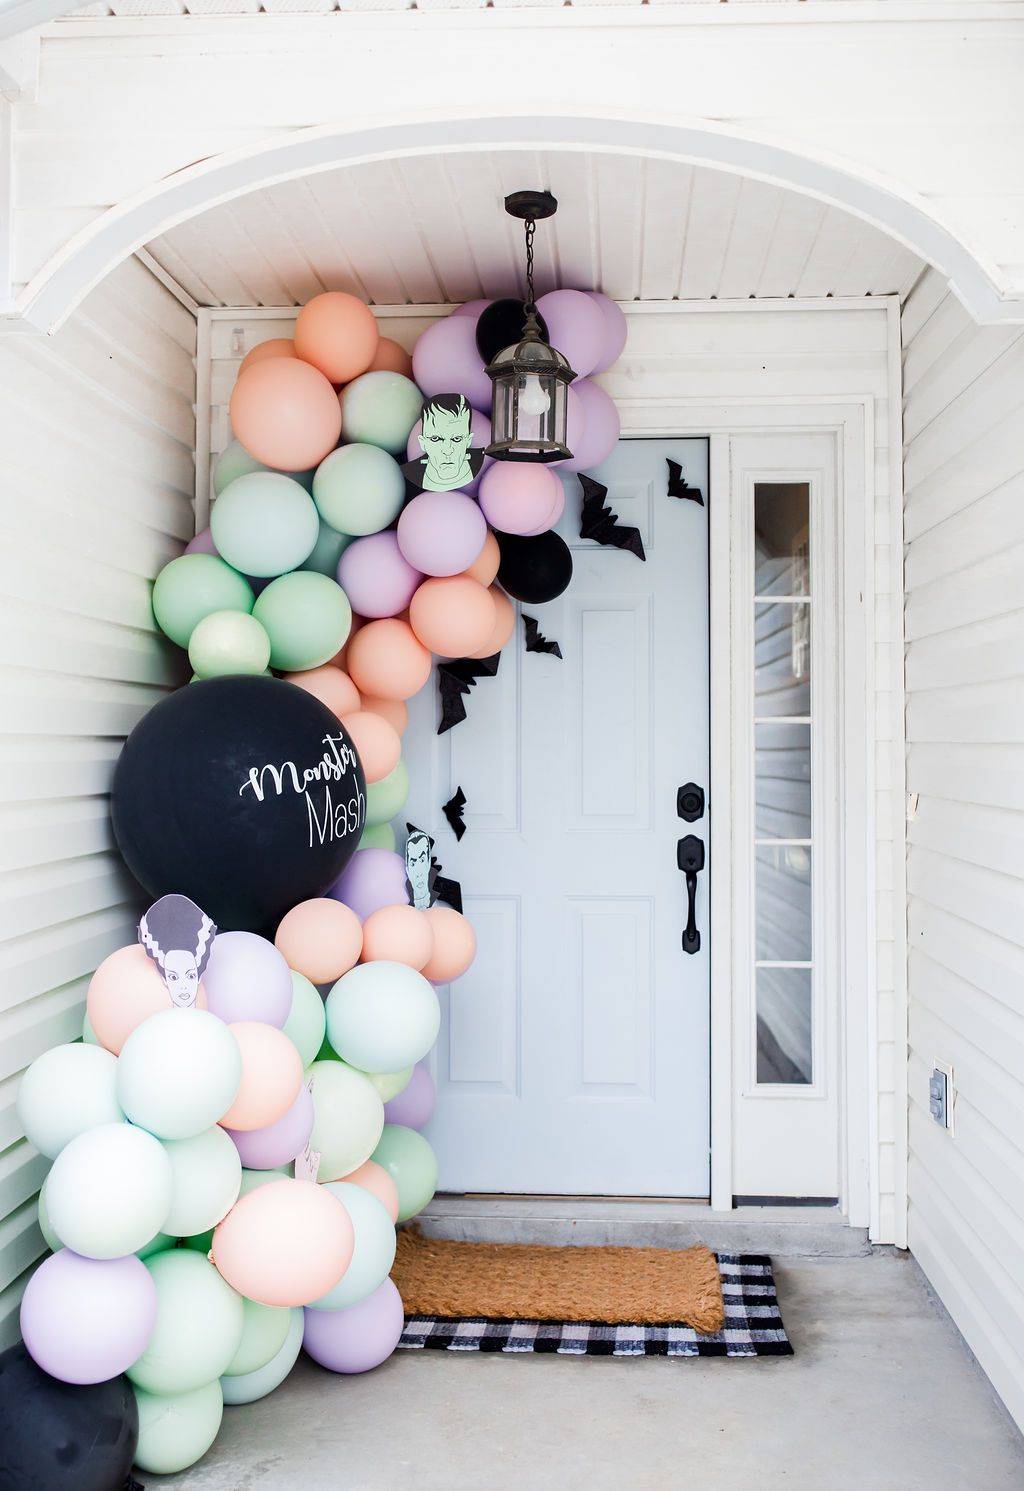 Rincón de globos en colores pastel como decoración de Halloween a la entrada.